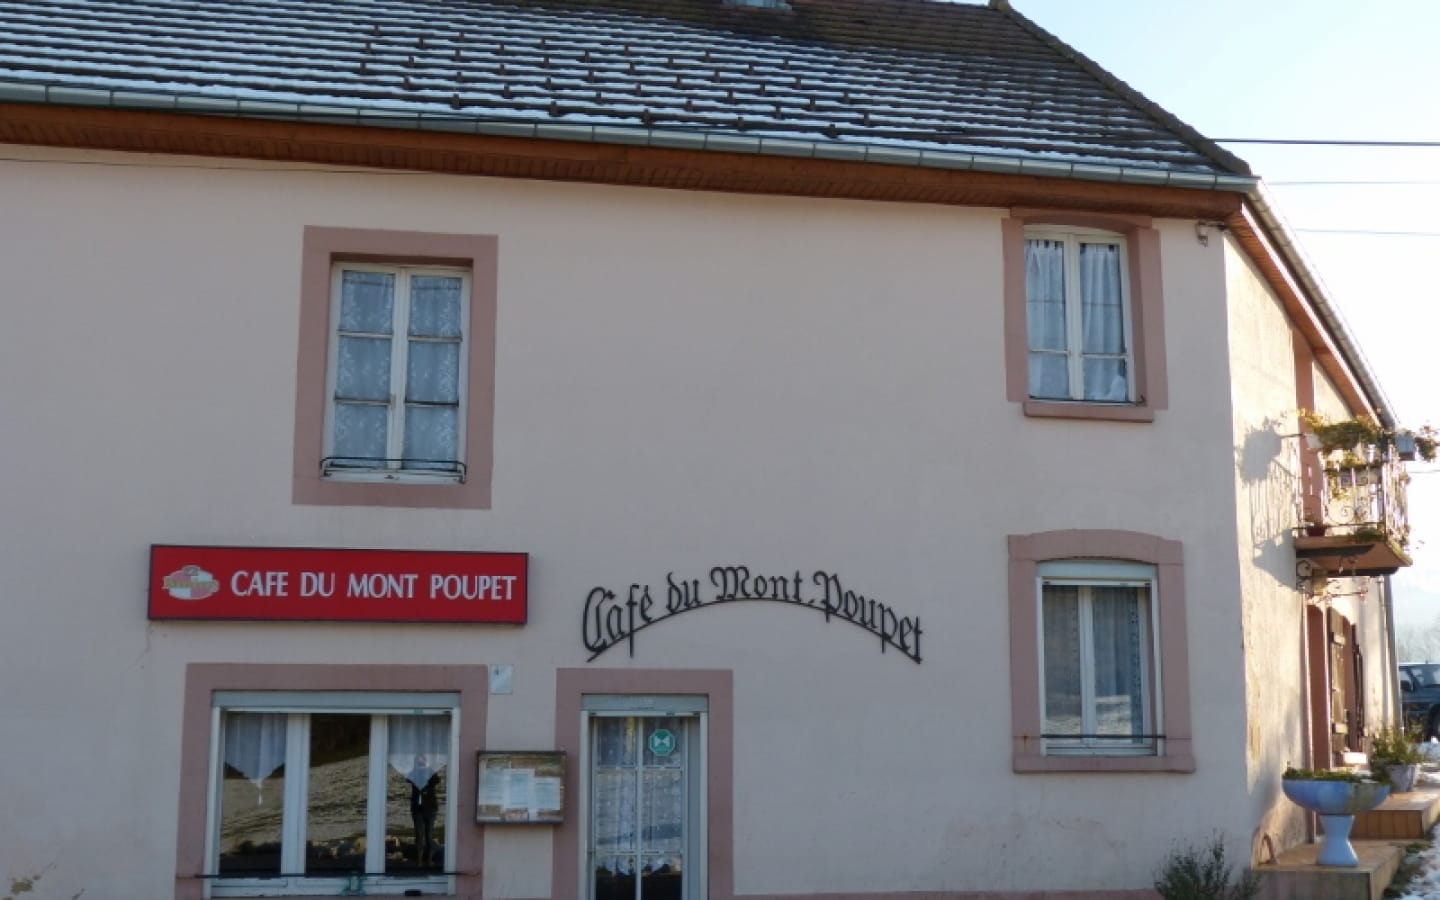 Café du Mont Poupet